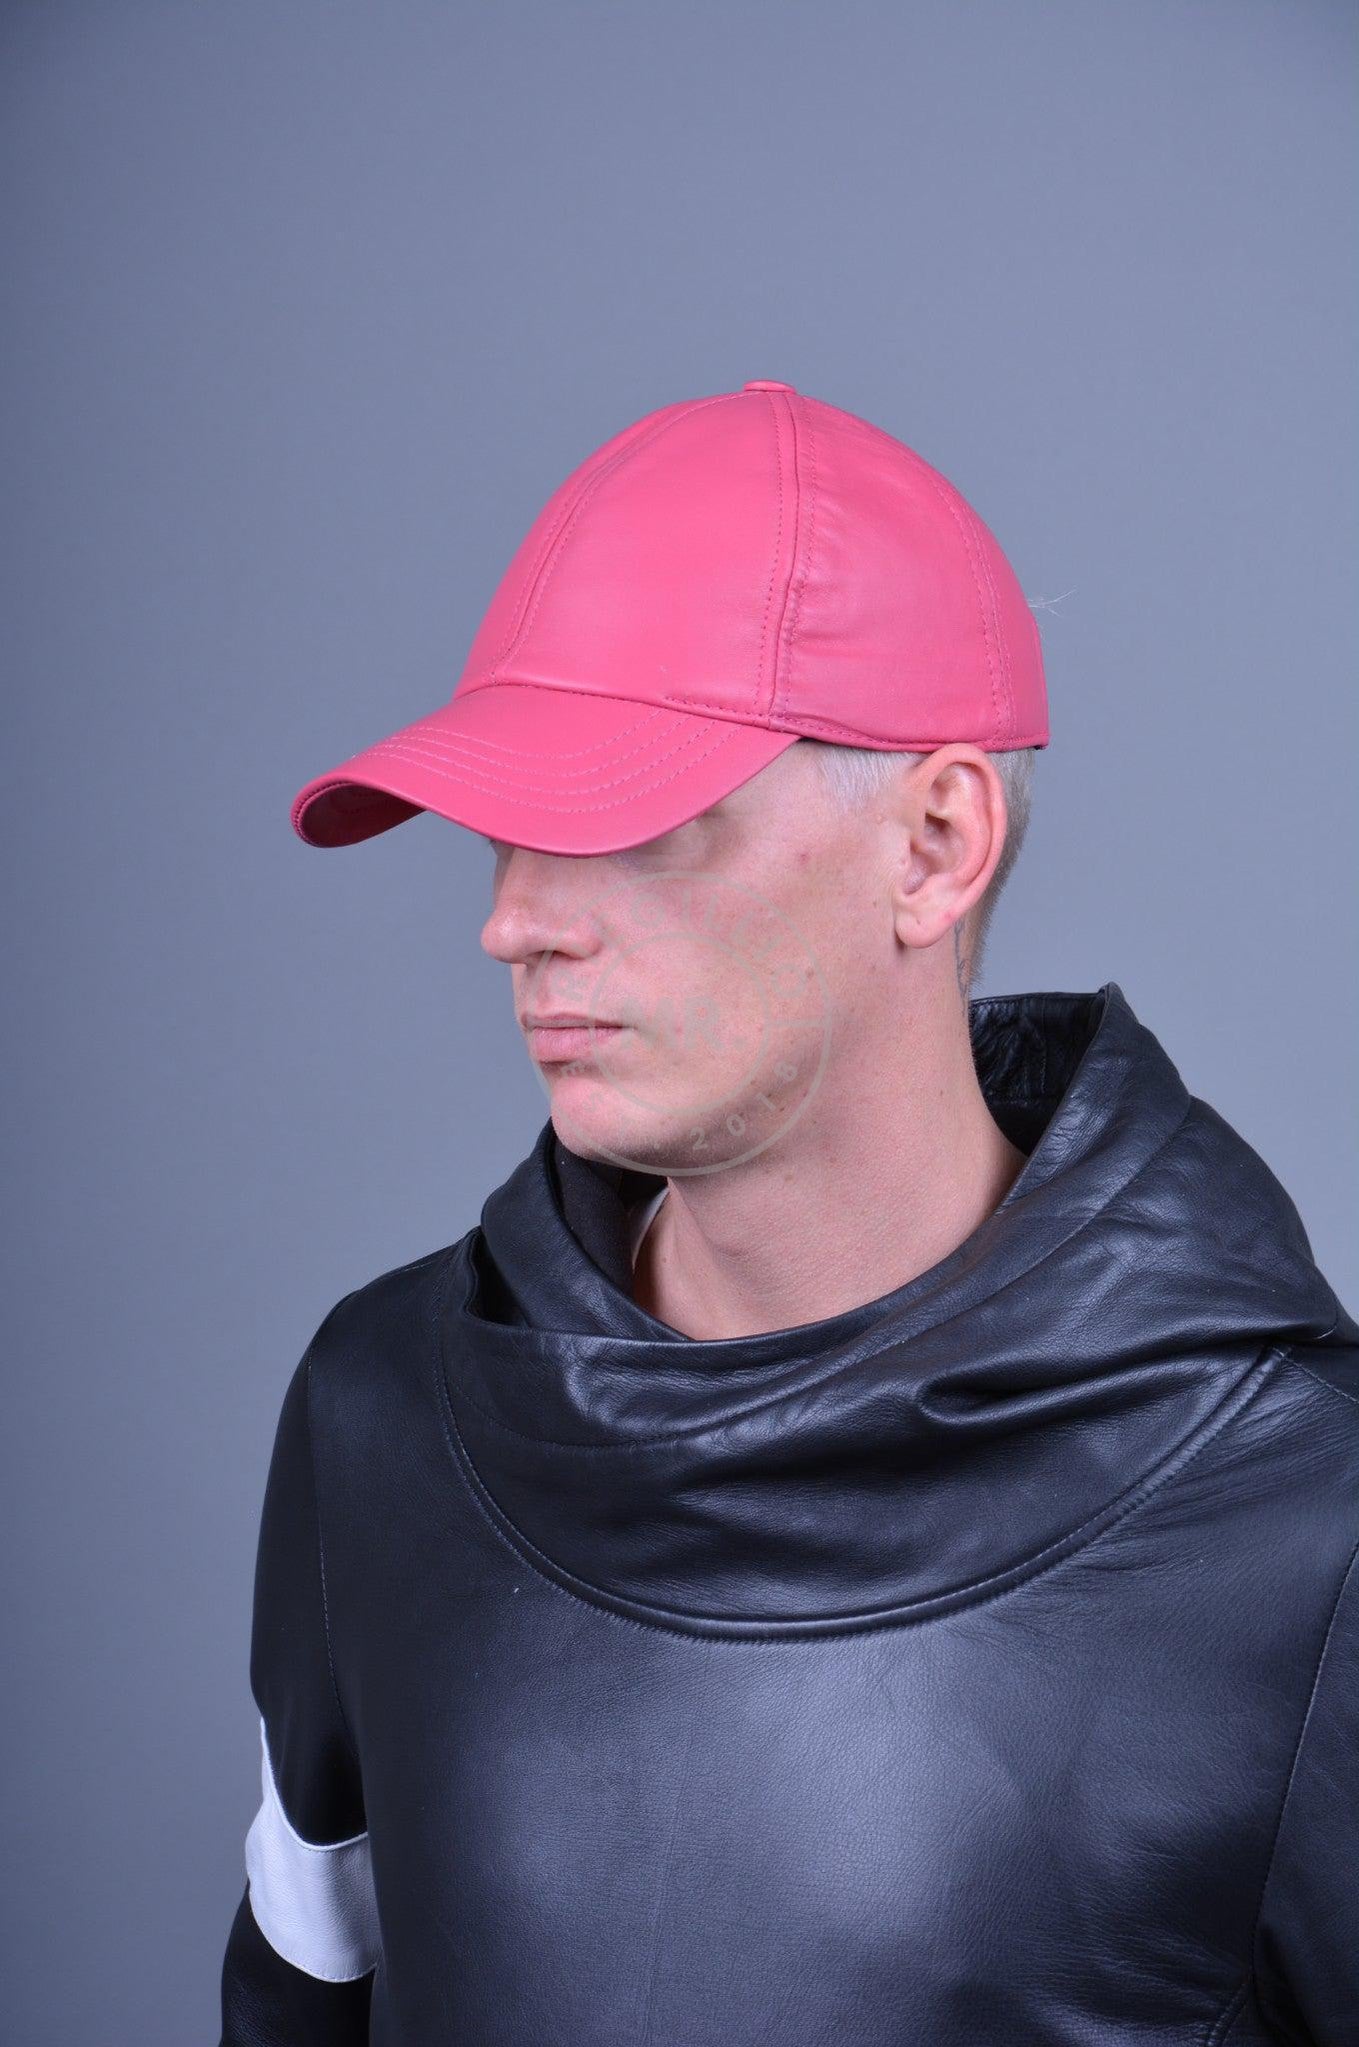 Pink Leather Cap at MR. Riegillio